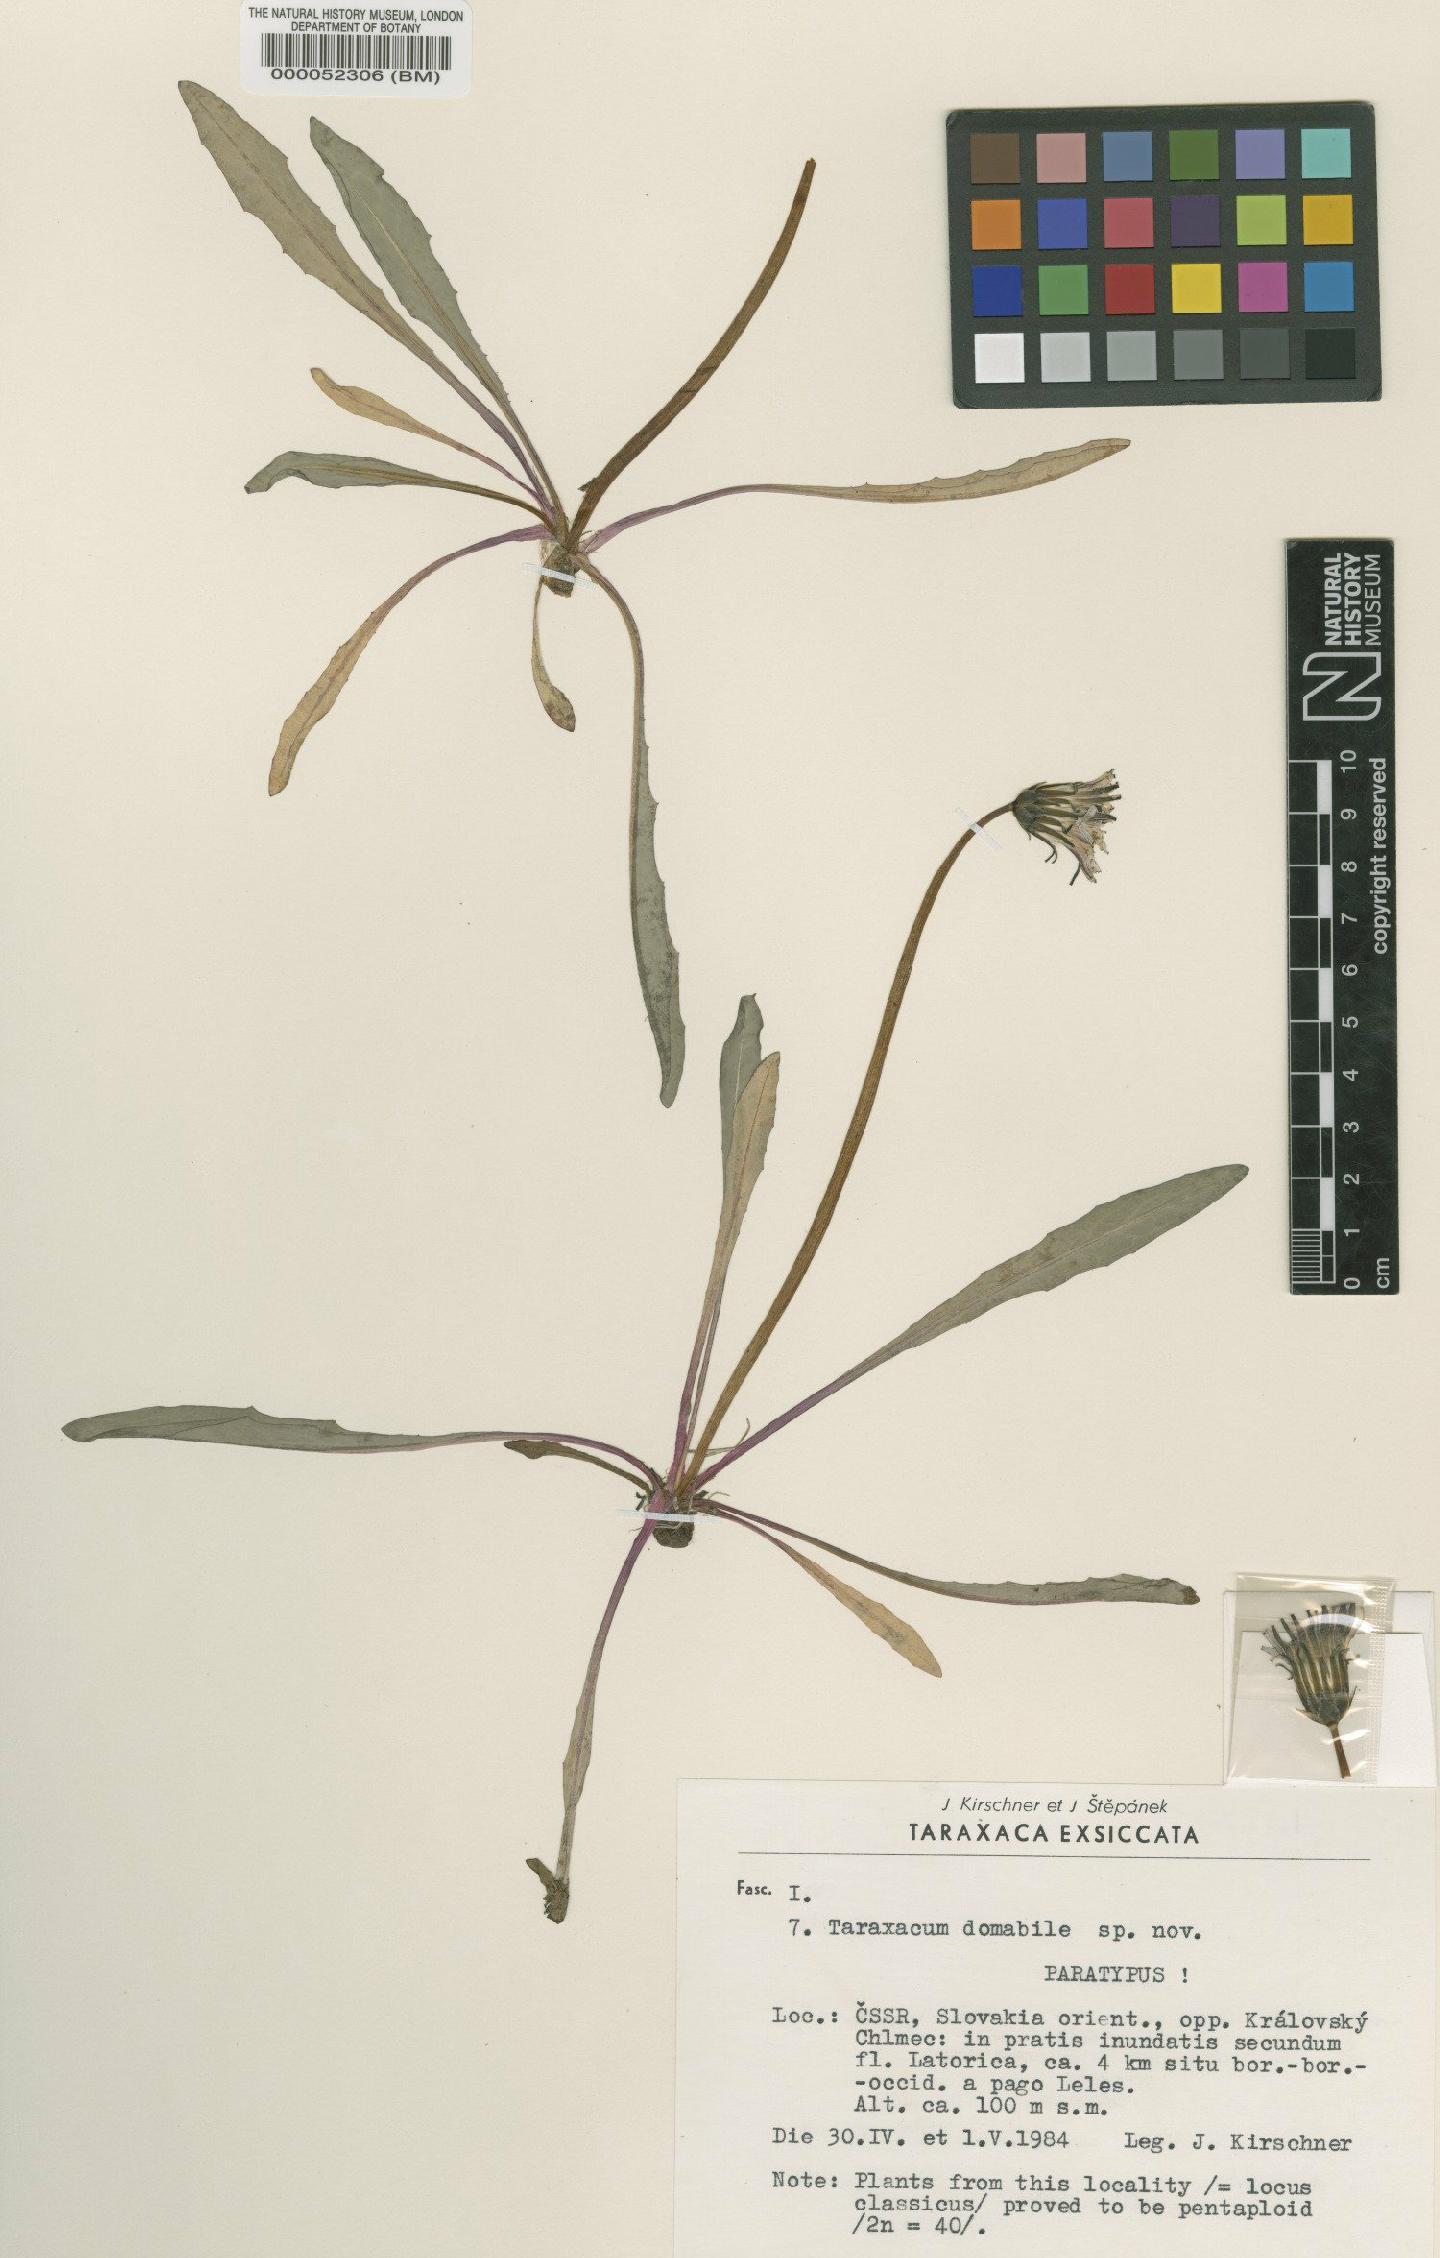 To NHMUK collection (Taraxacum domabile Kirschner & Št?pánek; Paratype; NHMUK:ecatalogue:4710059)